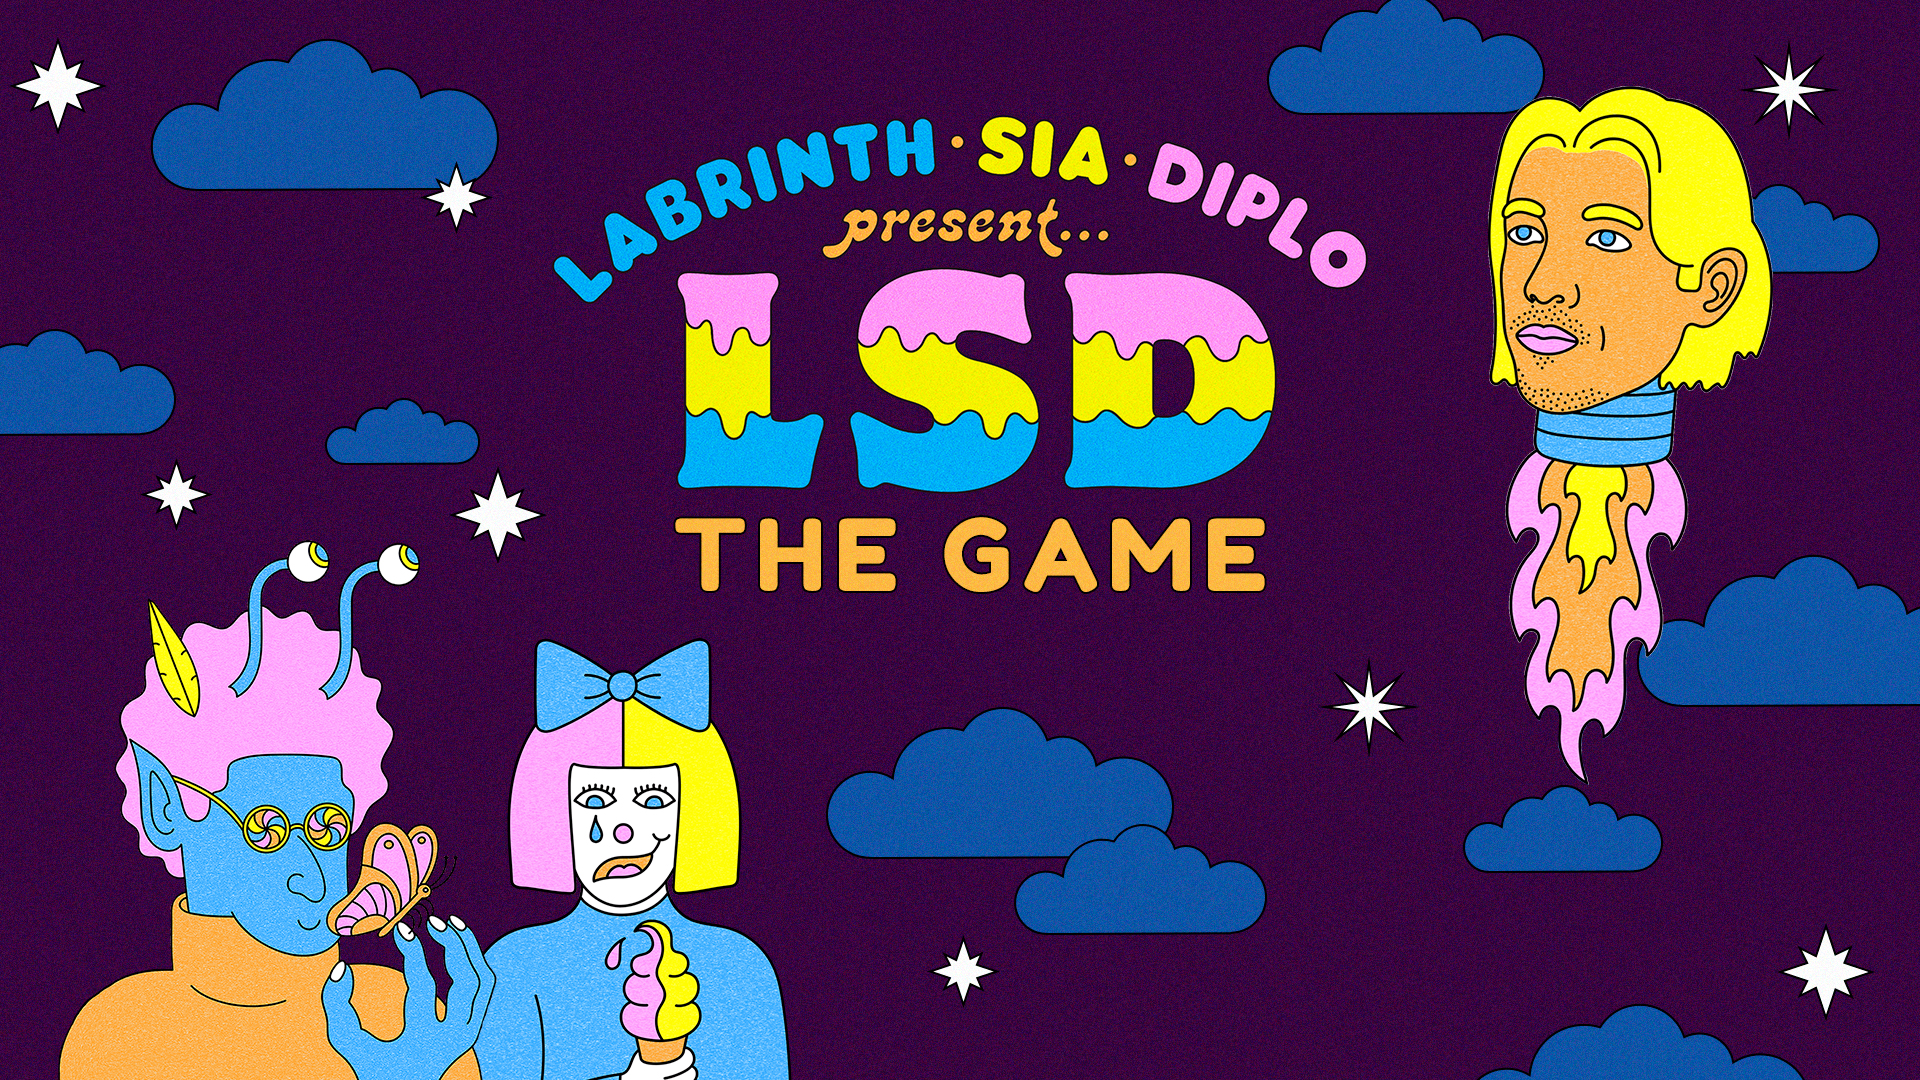 LSD o Game